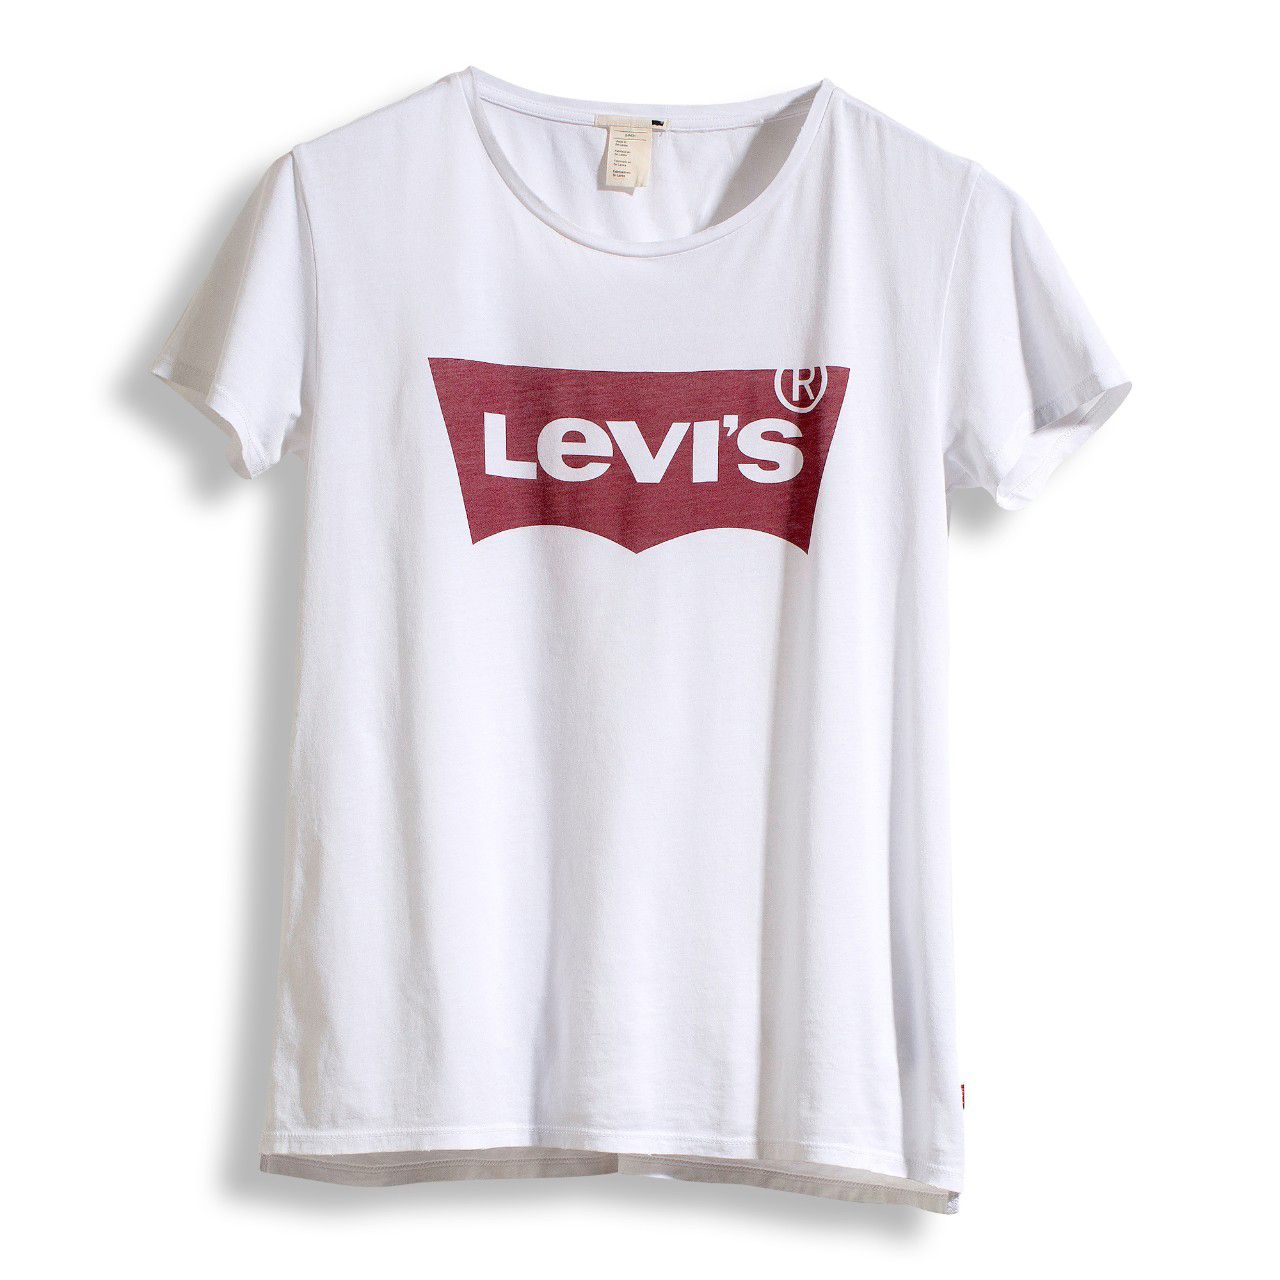 LEVIS Shirts f. Damen T-Shirt 17369-0053 weiss W18-LDT1